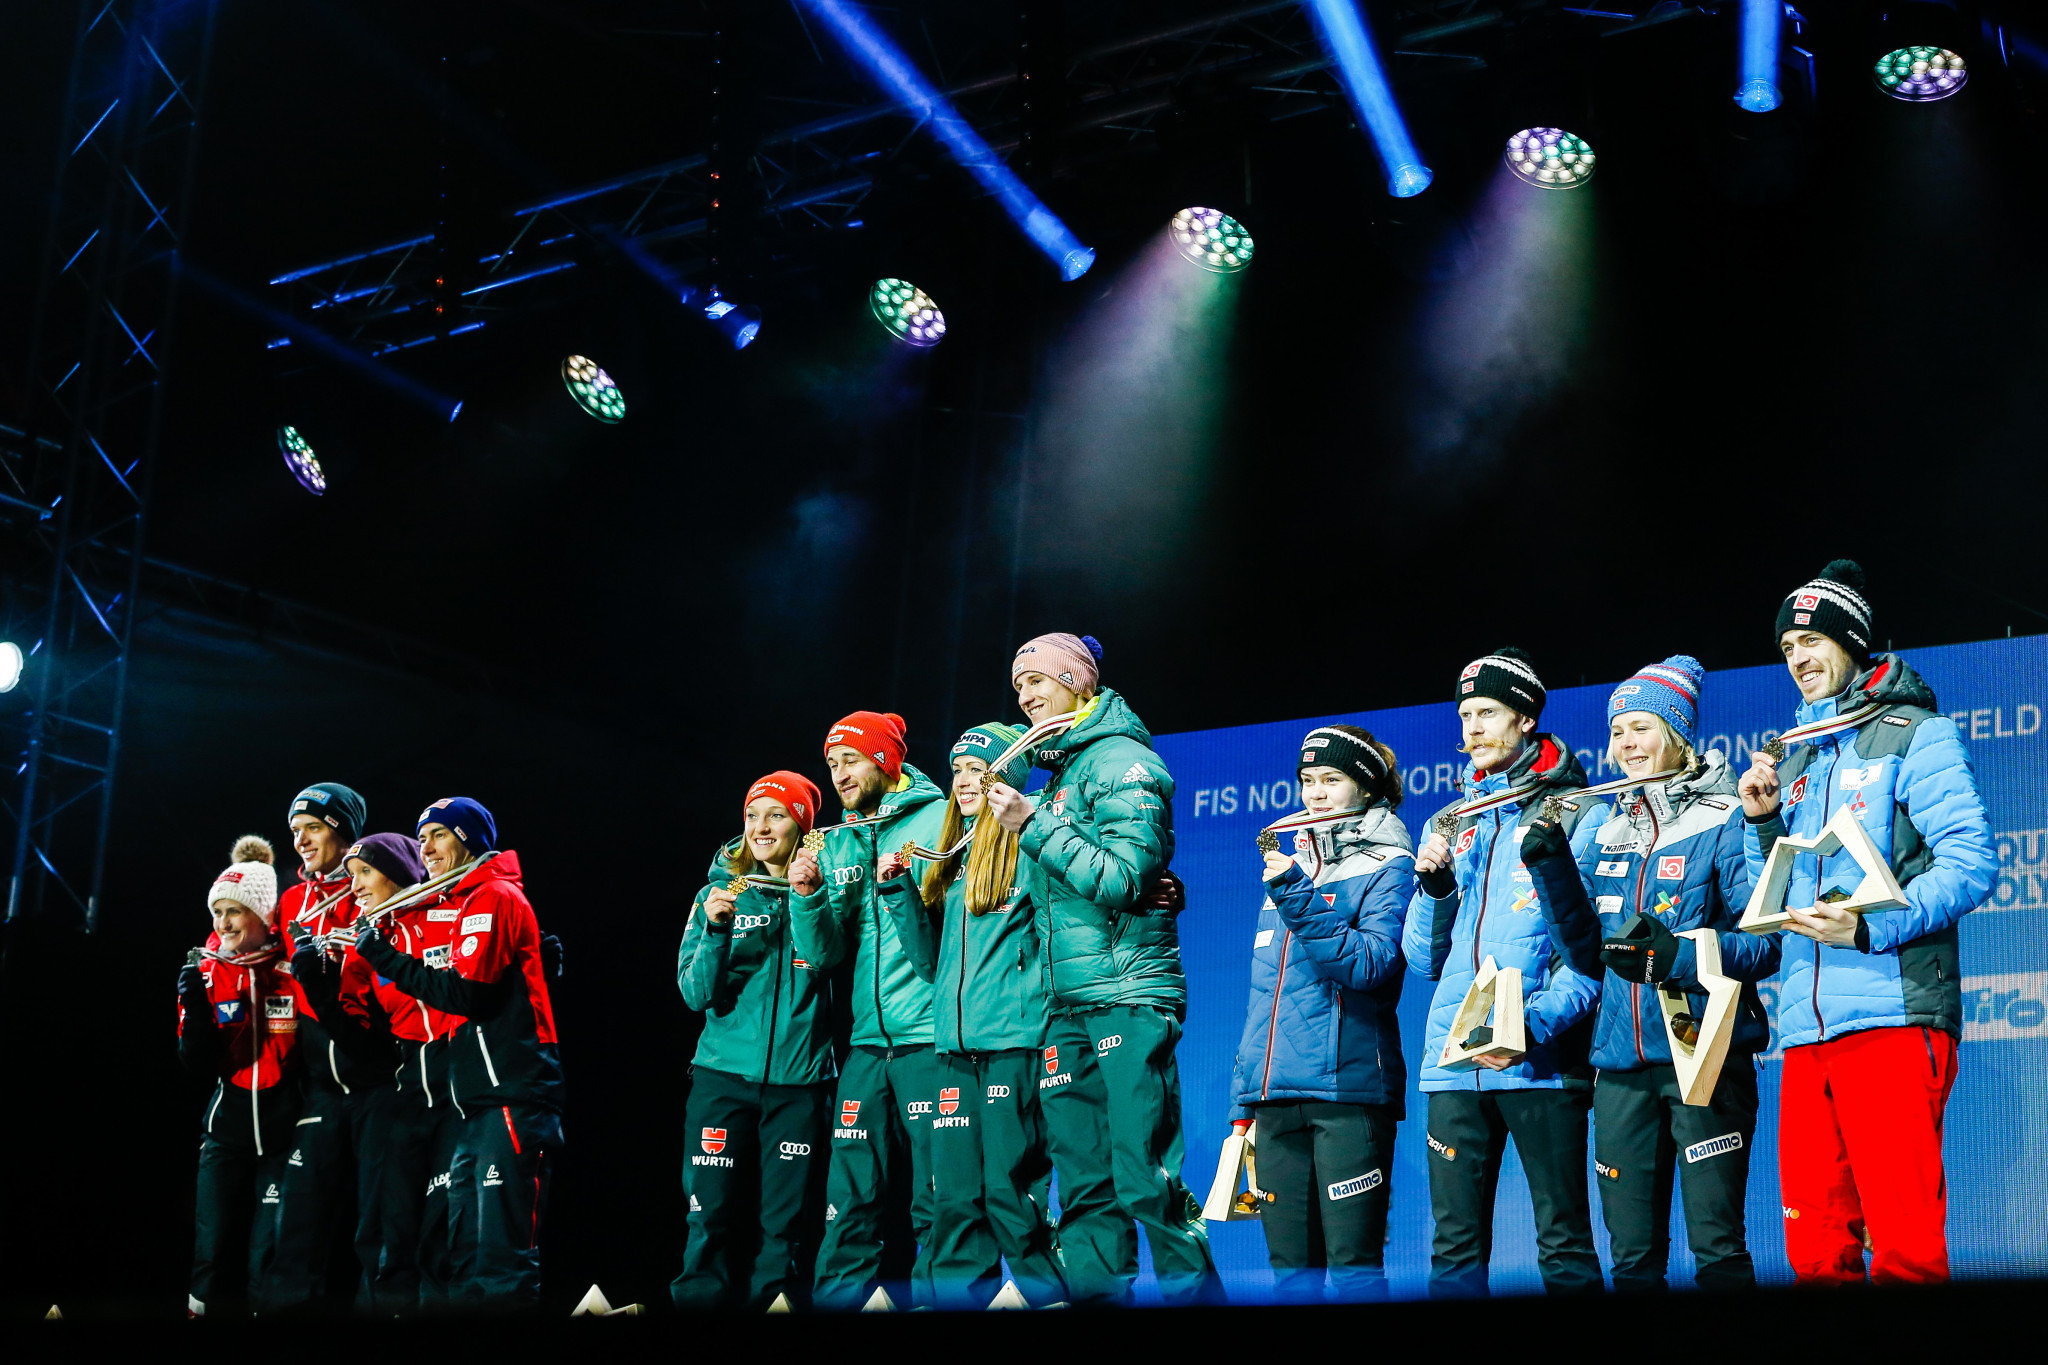 Primul eveniment comun al Cupei Mondiale FIFA ™ pentru bărbați și femei va avea loc la Rasnov în perioada 18-20 februarie, urmând să apară un program pe echipe mixte © Getty Images